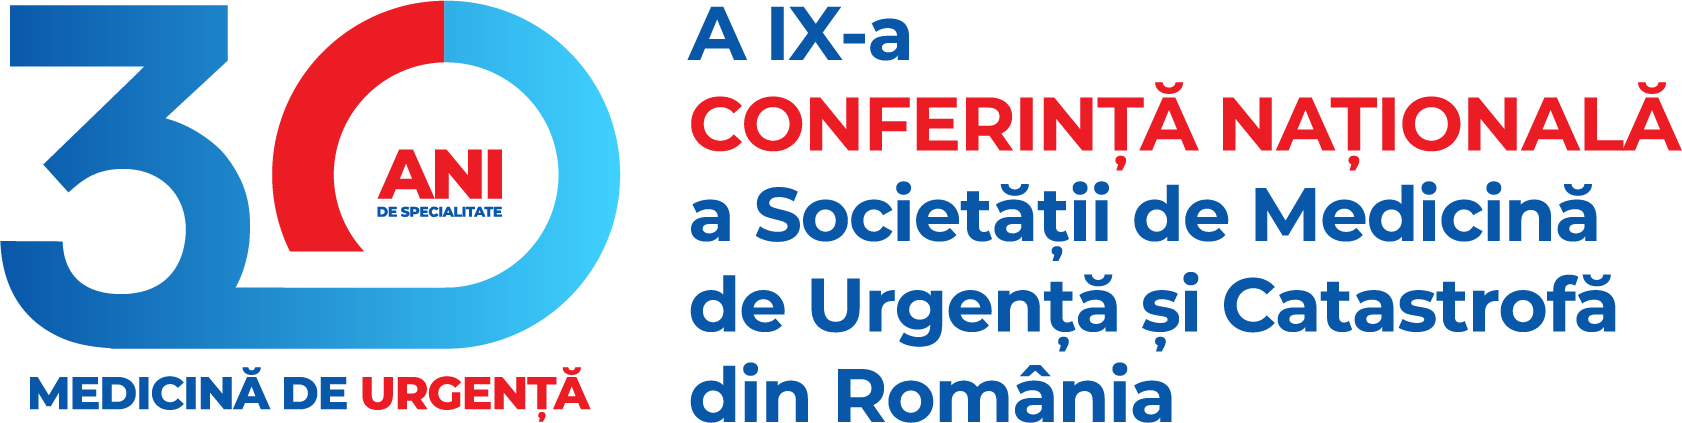 A IX-a Conferinţa Naţională a Societăţii de Medicină de Urgenţă şi Catastrofă din România